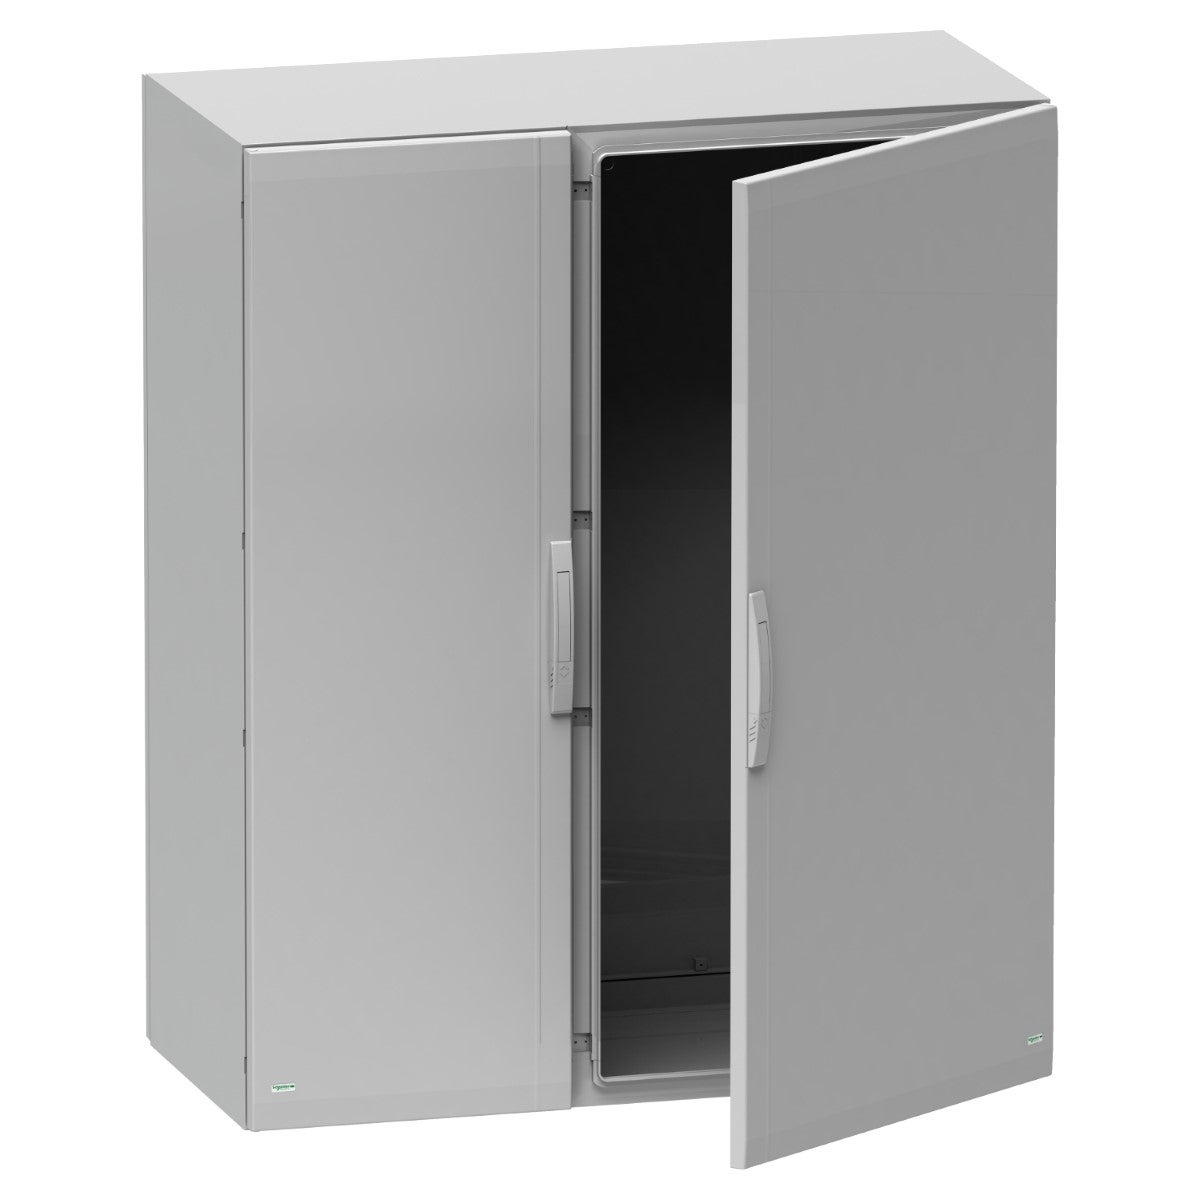 Floor standing polyester enclosure, Thalassa PLA, plain door, completely sealed, 1250x1000x320mm, IP65, IK10